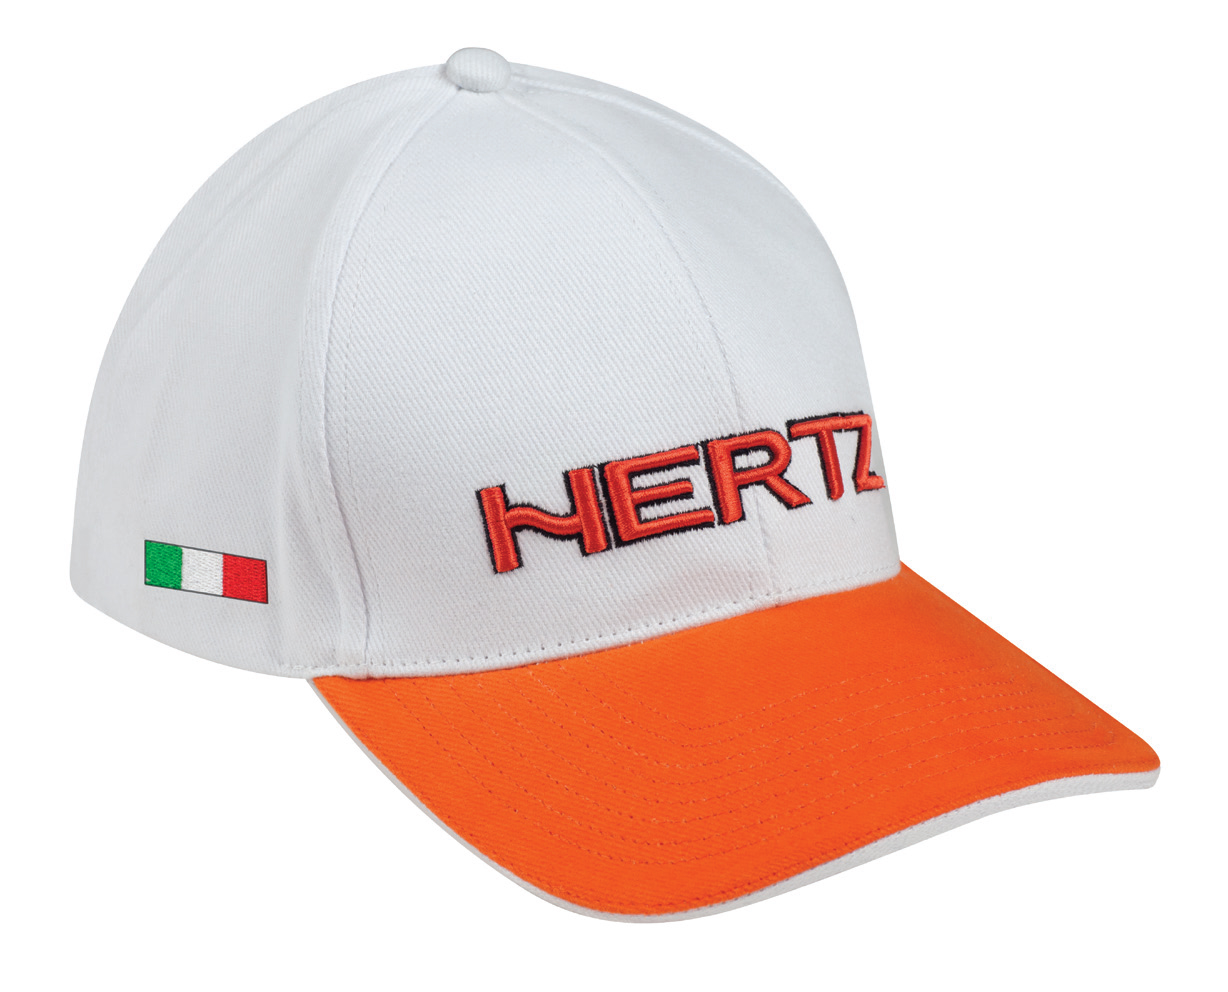  90501003 / HERTZ SUMMER WHITE CAP